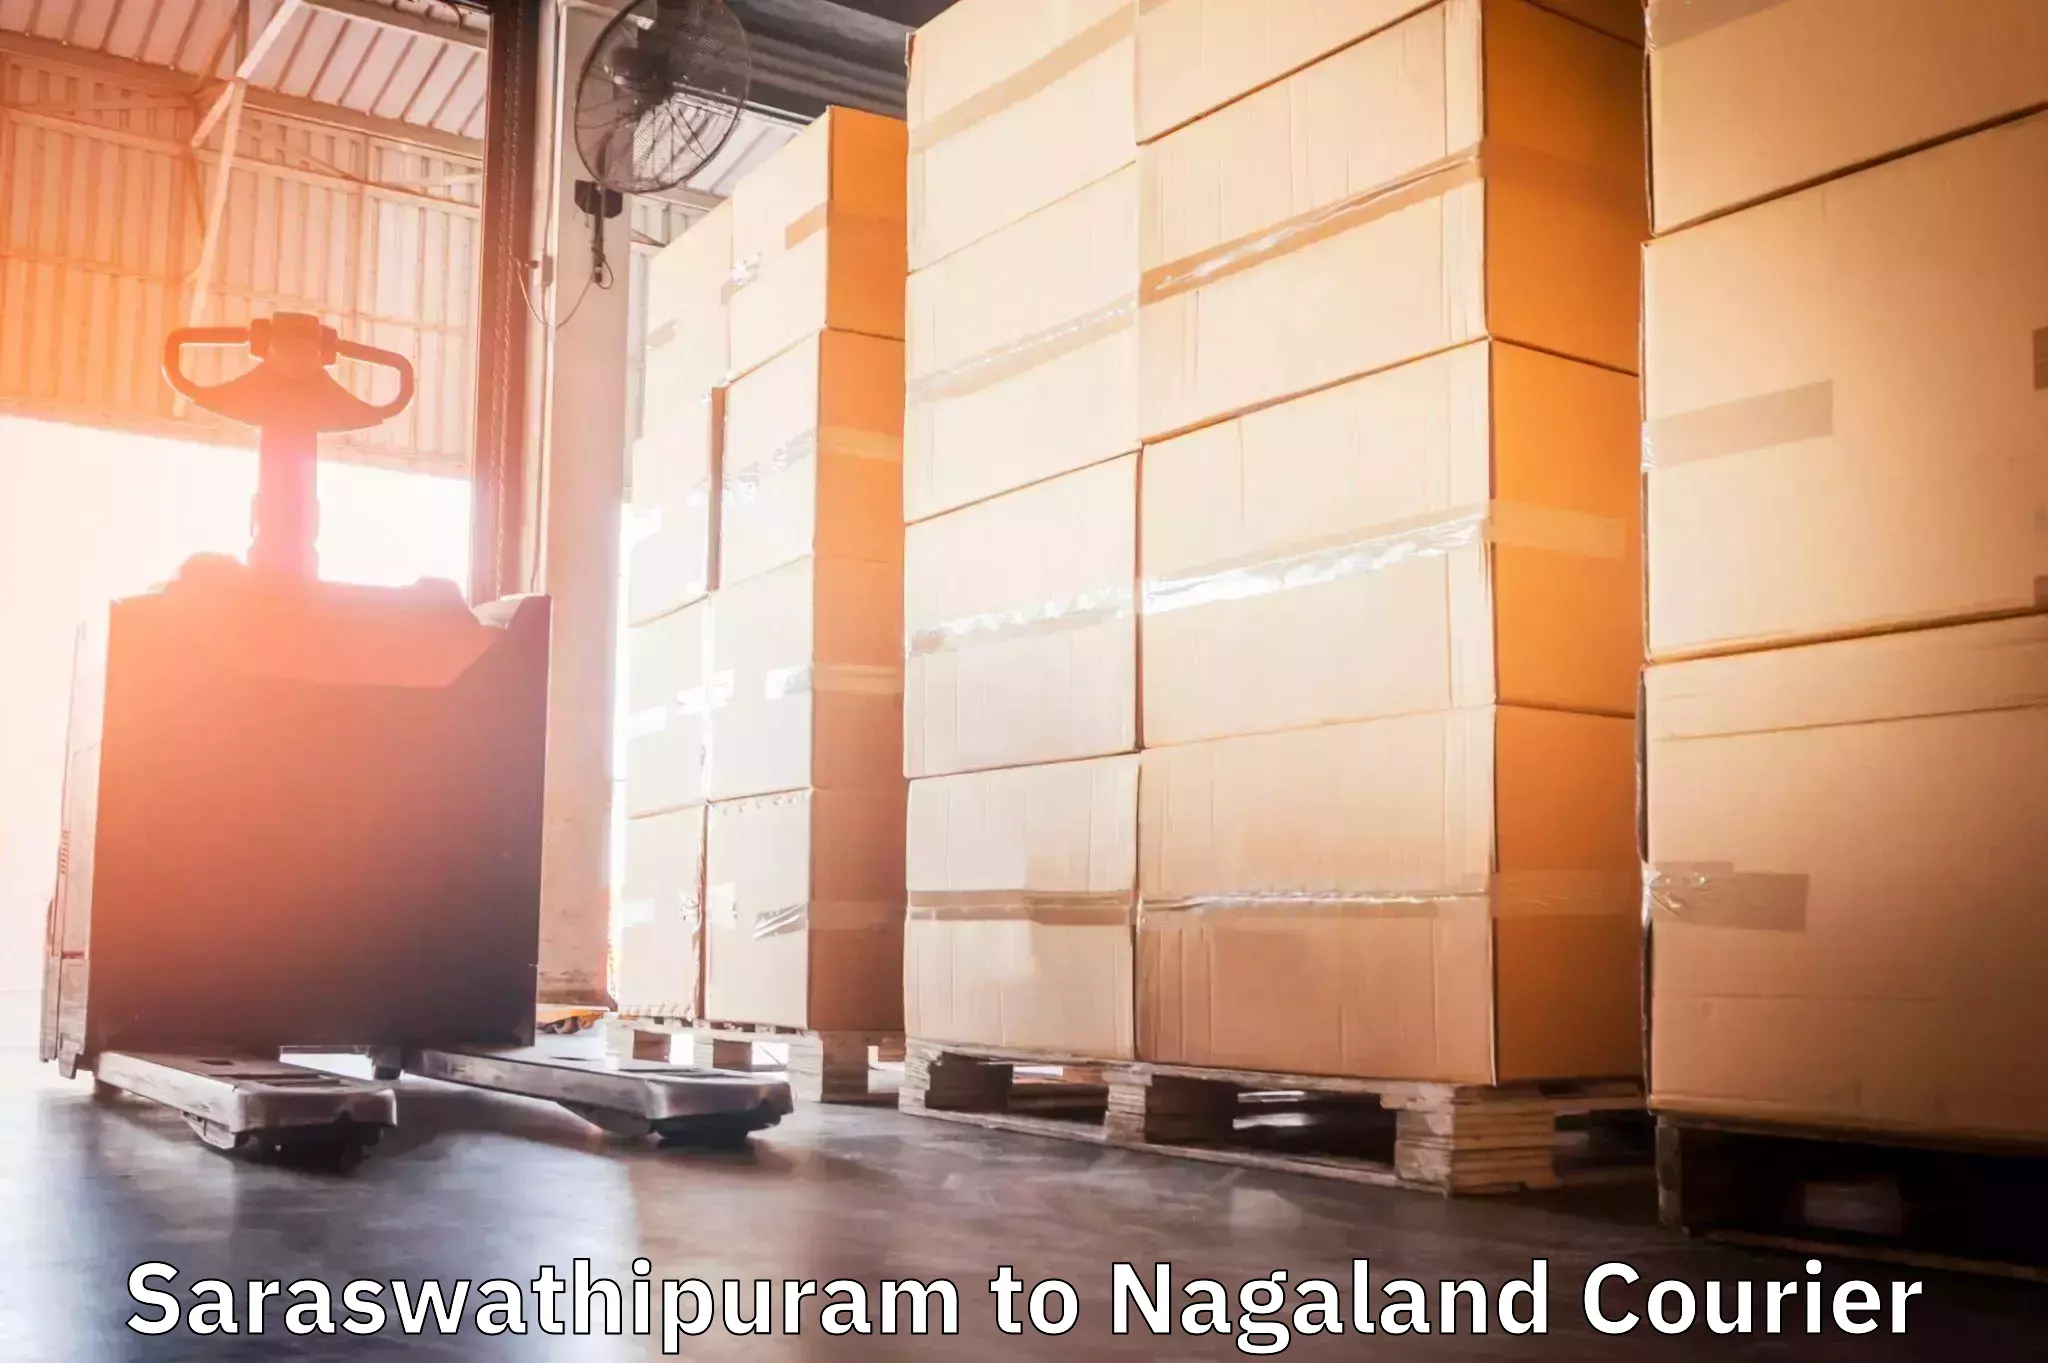 International courier networks Saraswathipuram to NIT Nagaland